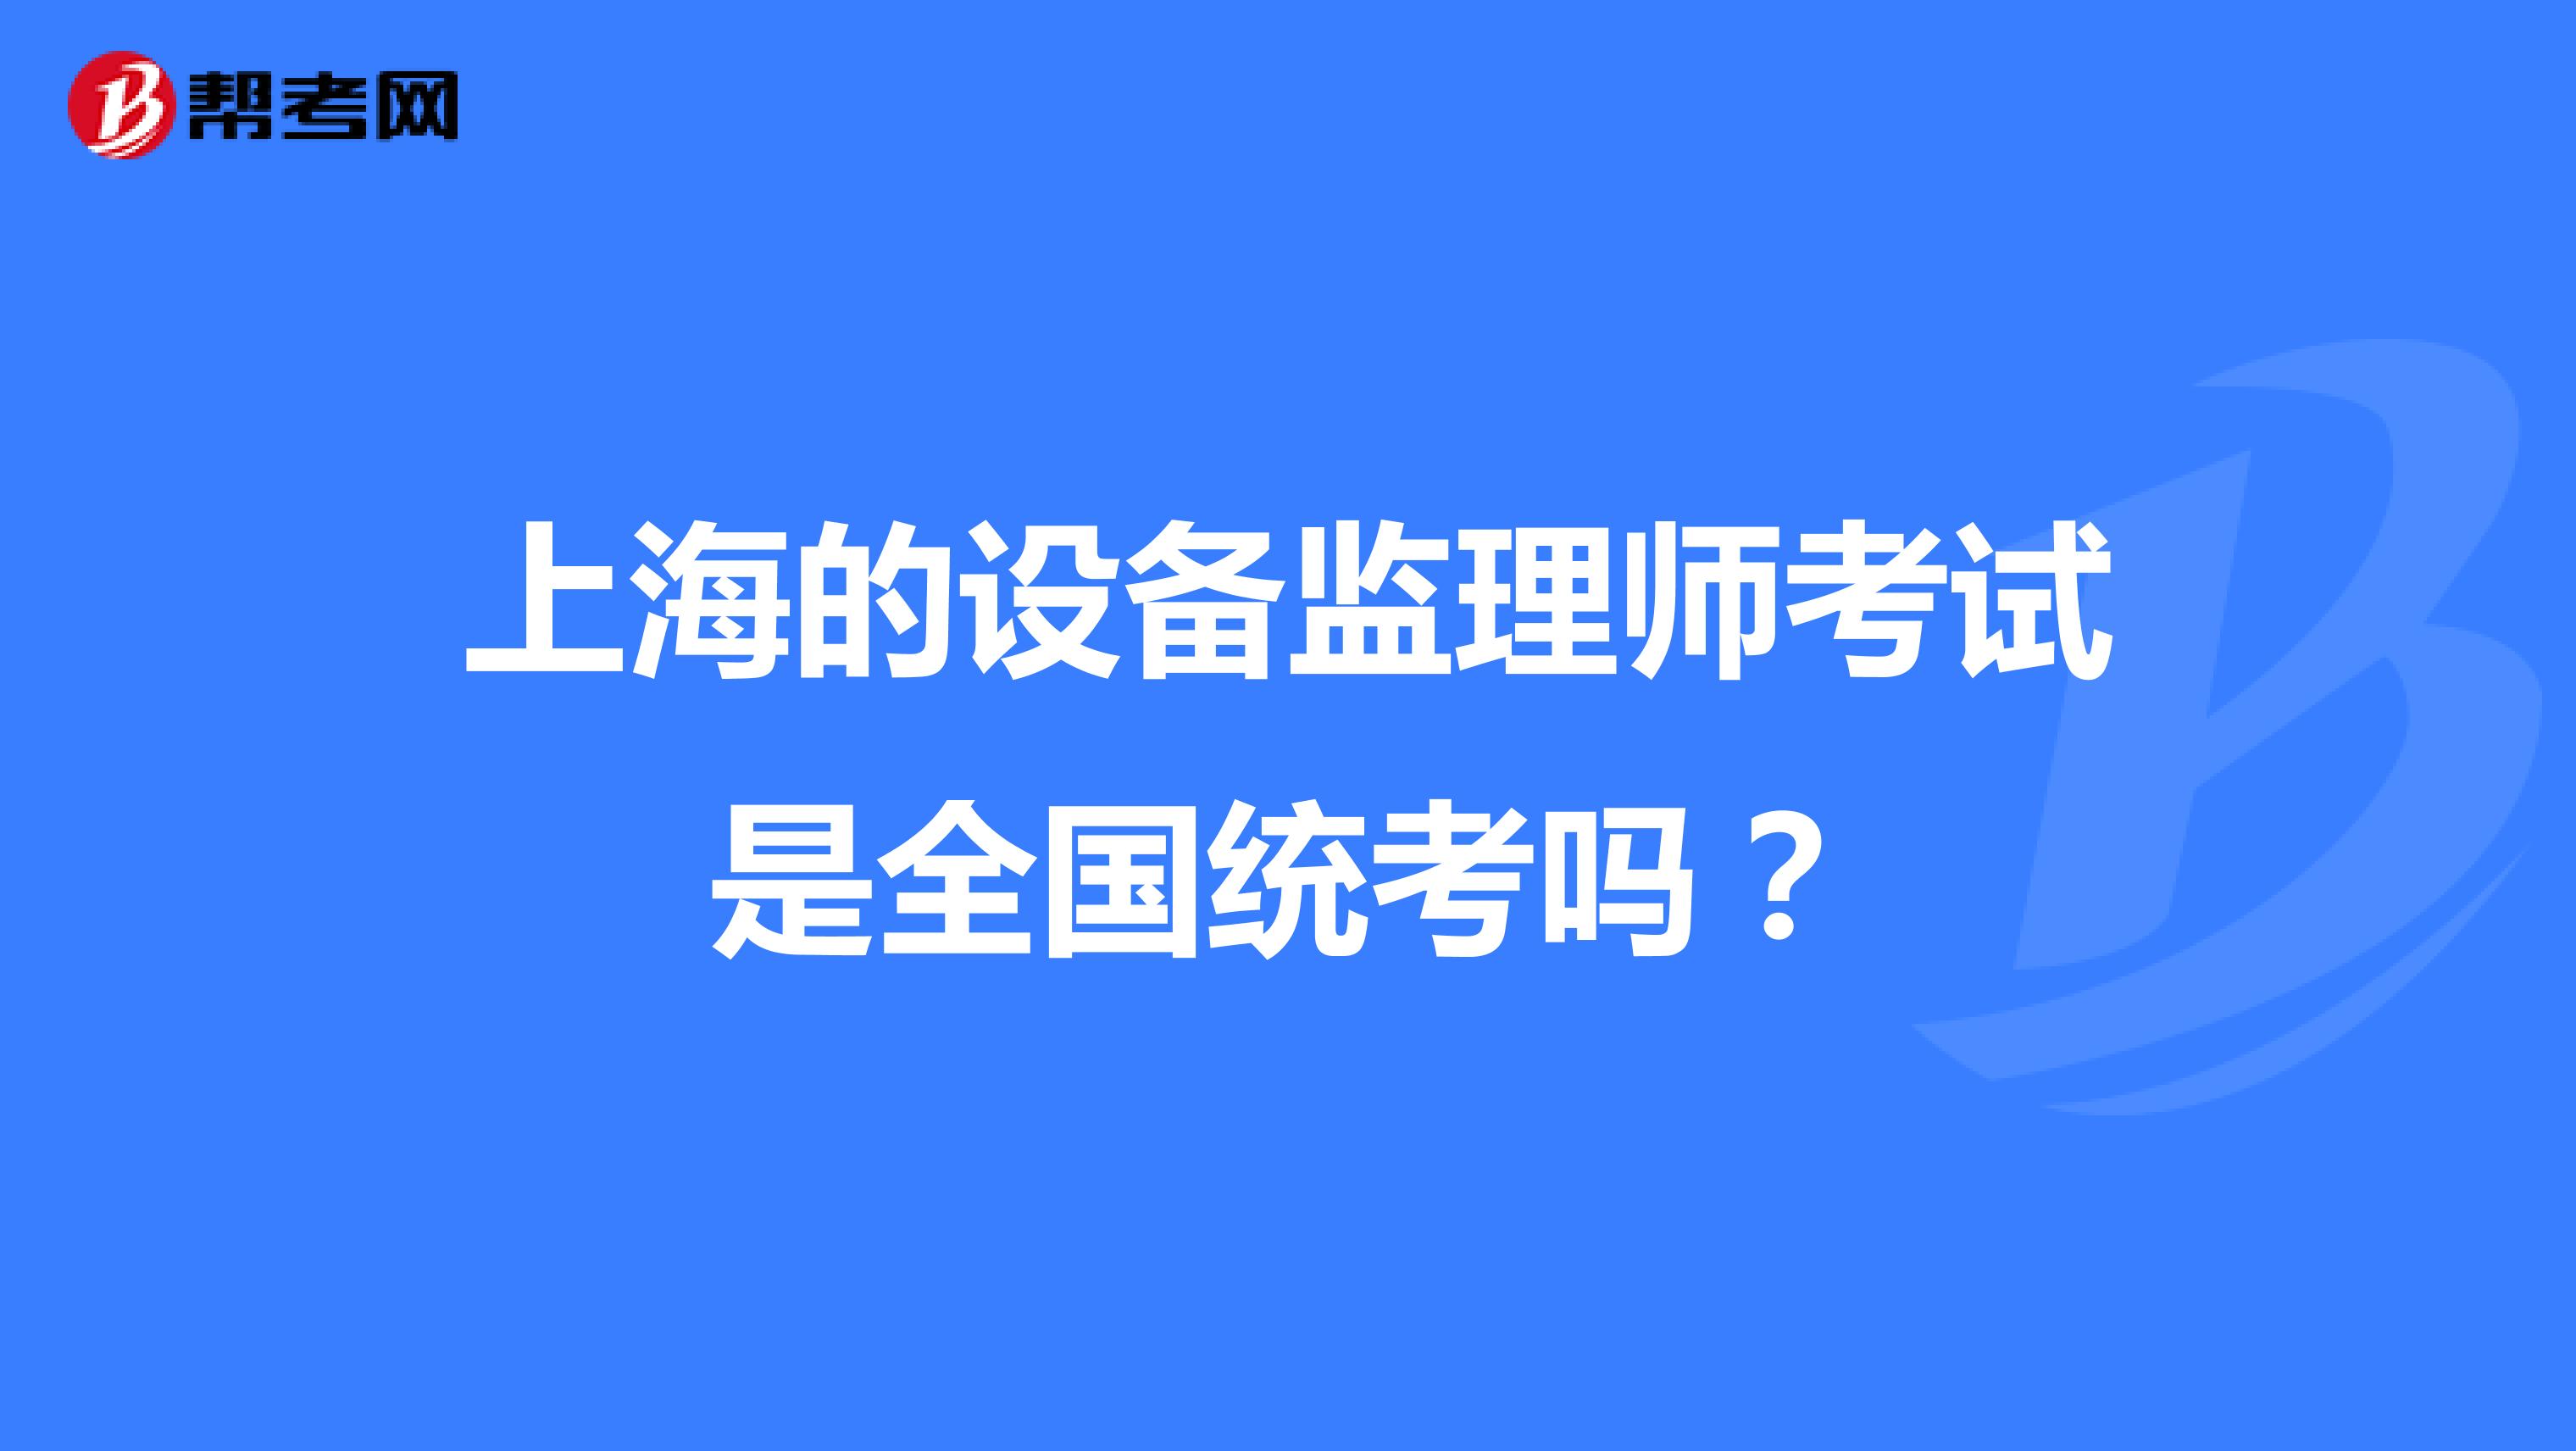 上海的设备监理师考试是全国统考吗？